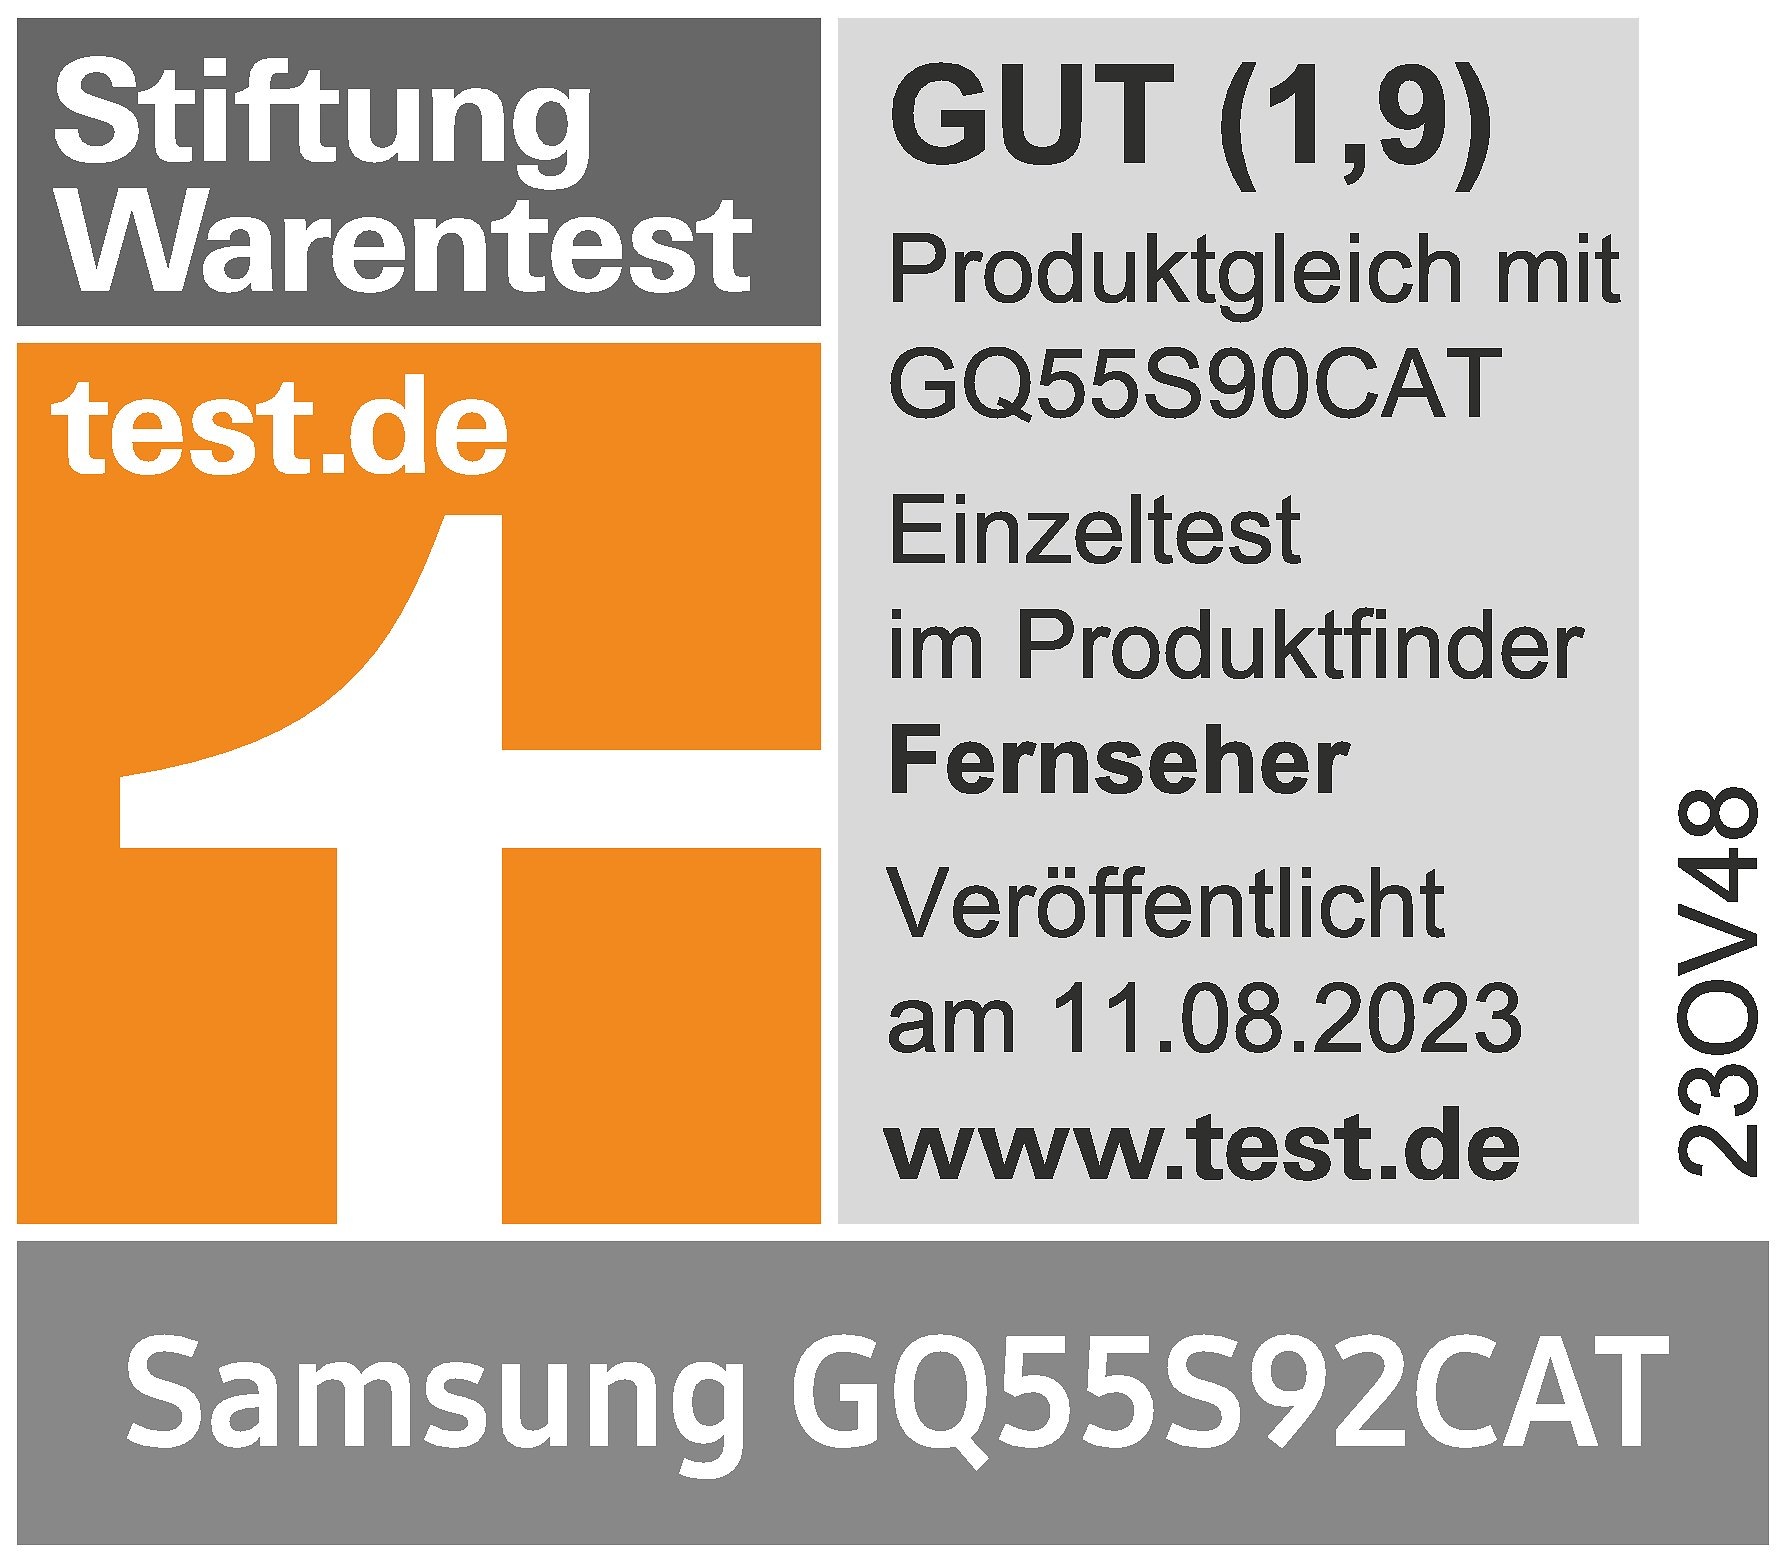 Stiftung Warentest, GUT (1,9), test.de, veröffentlicht am 11.8.2023, zum Samsung GQ55S92CAT, Einzeltest.